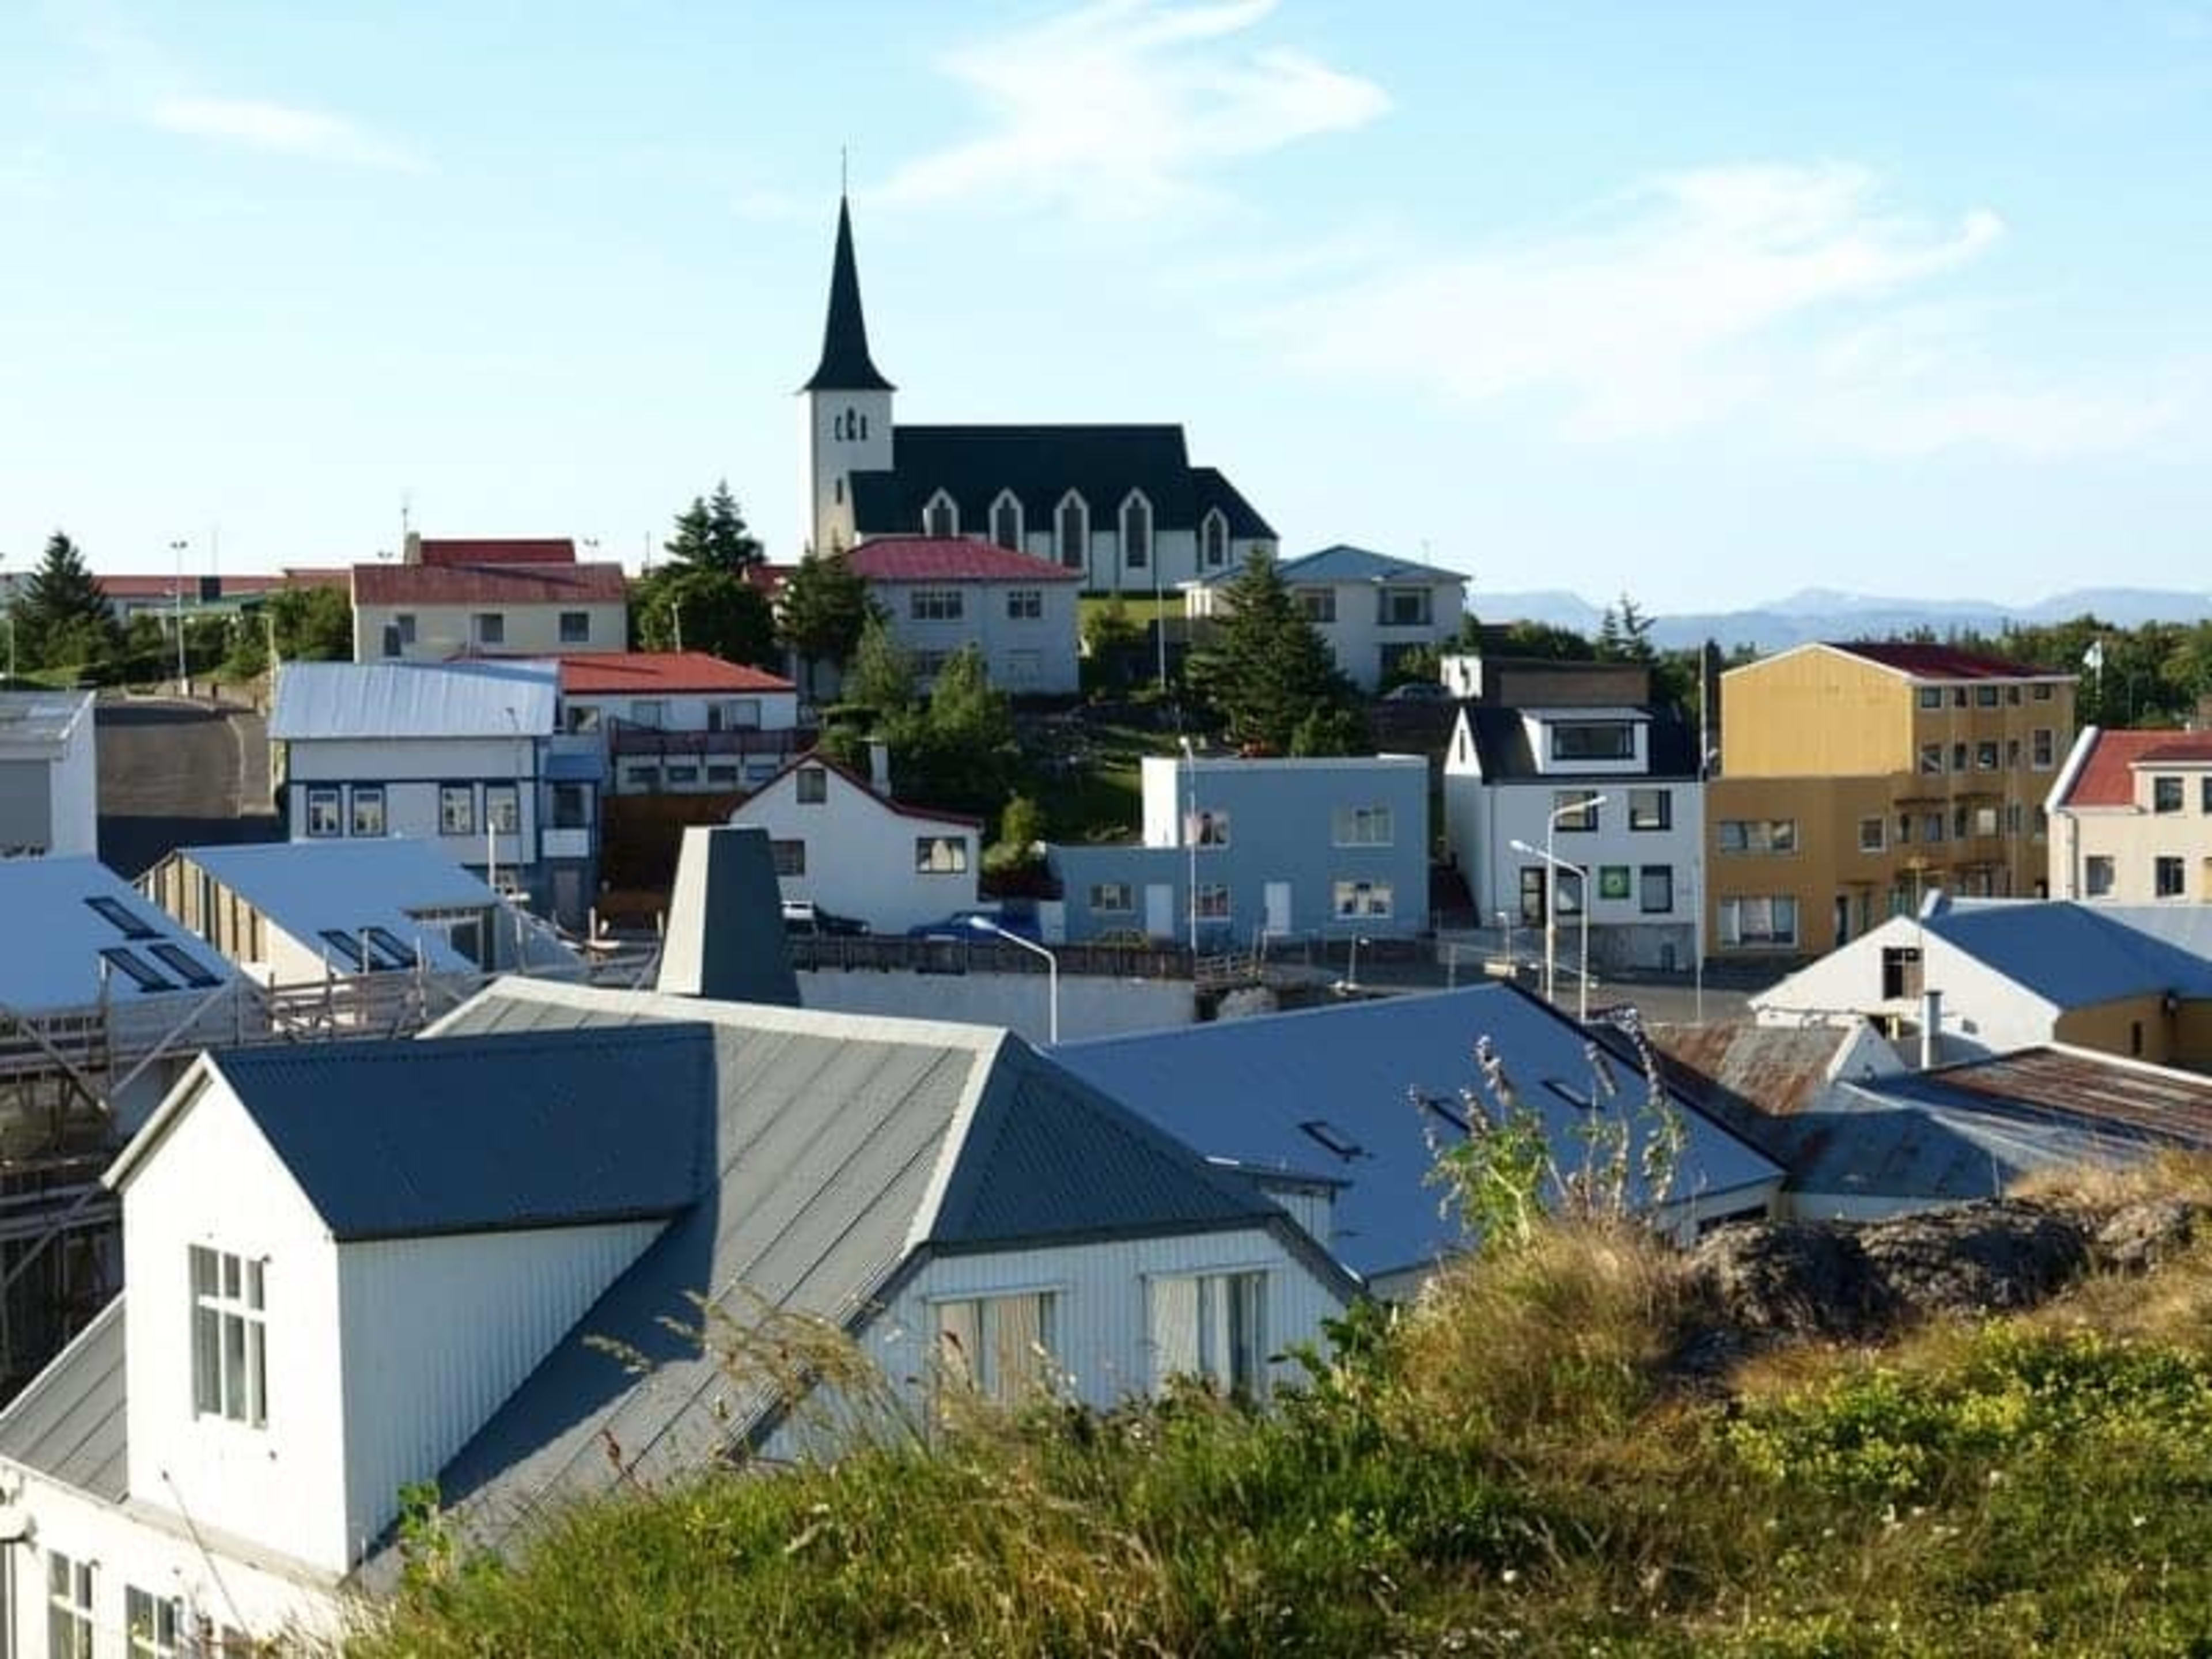 The town of Borgarnes, Borgarfjörður